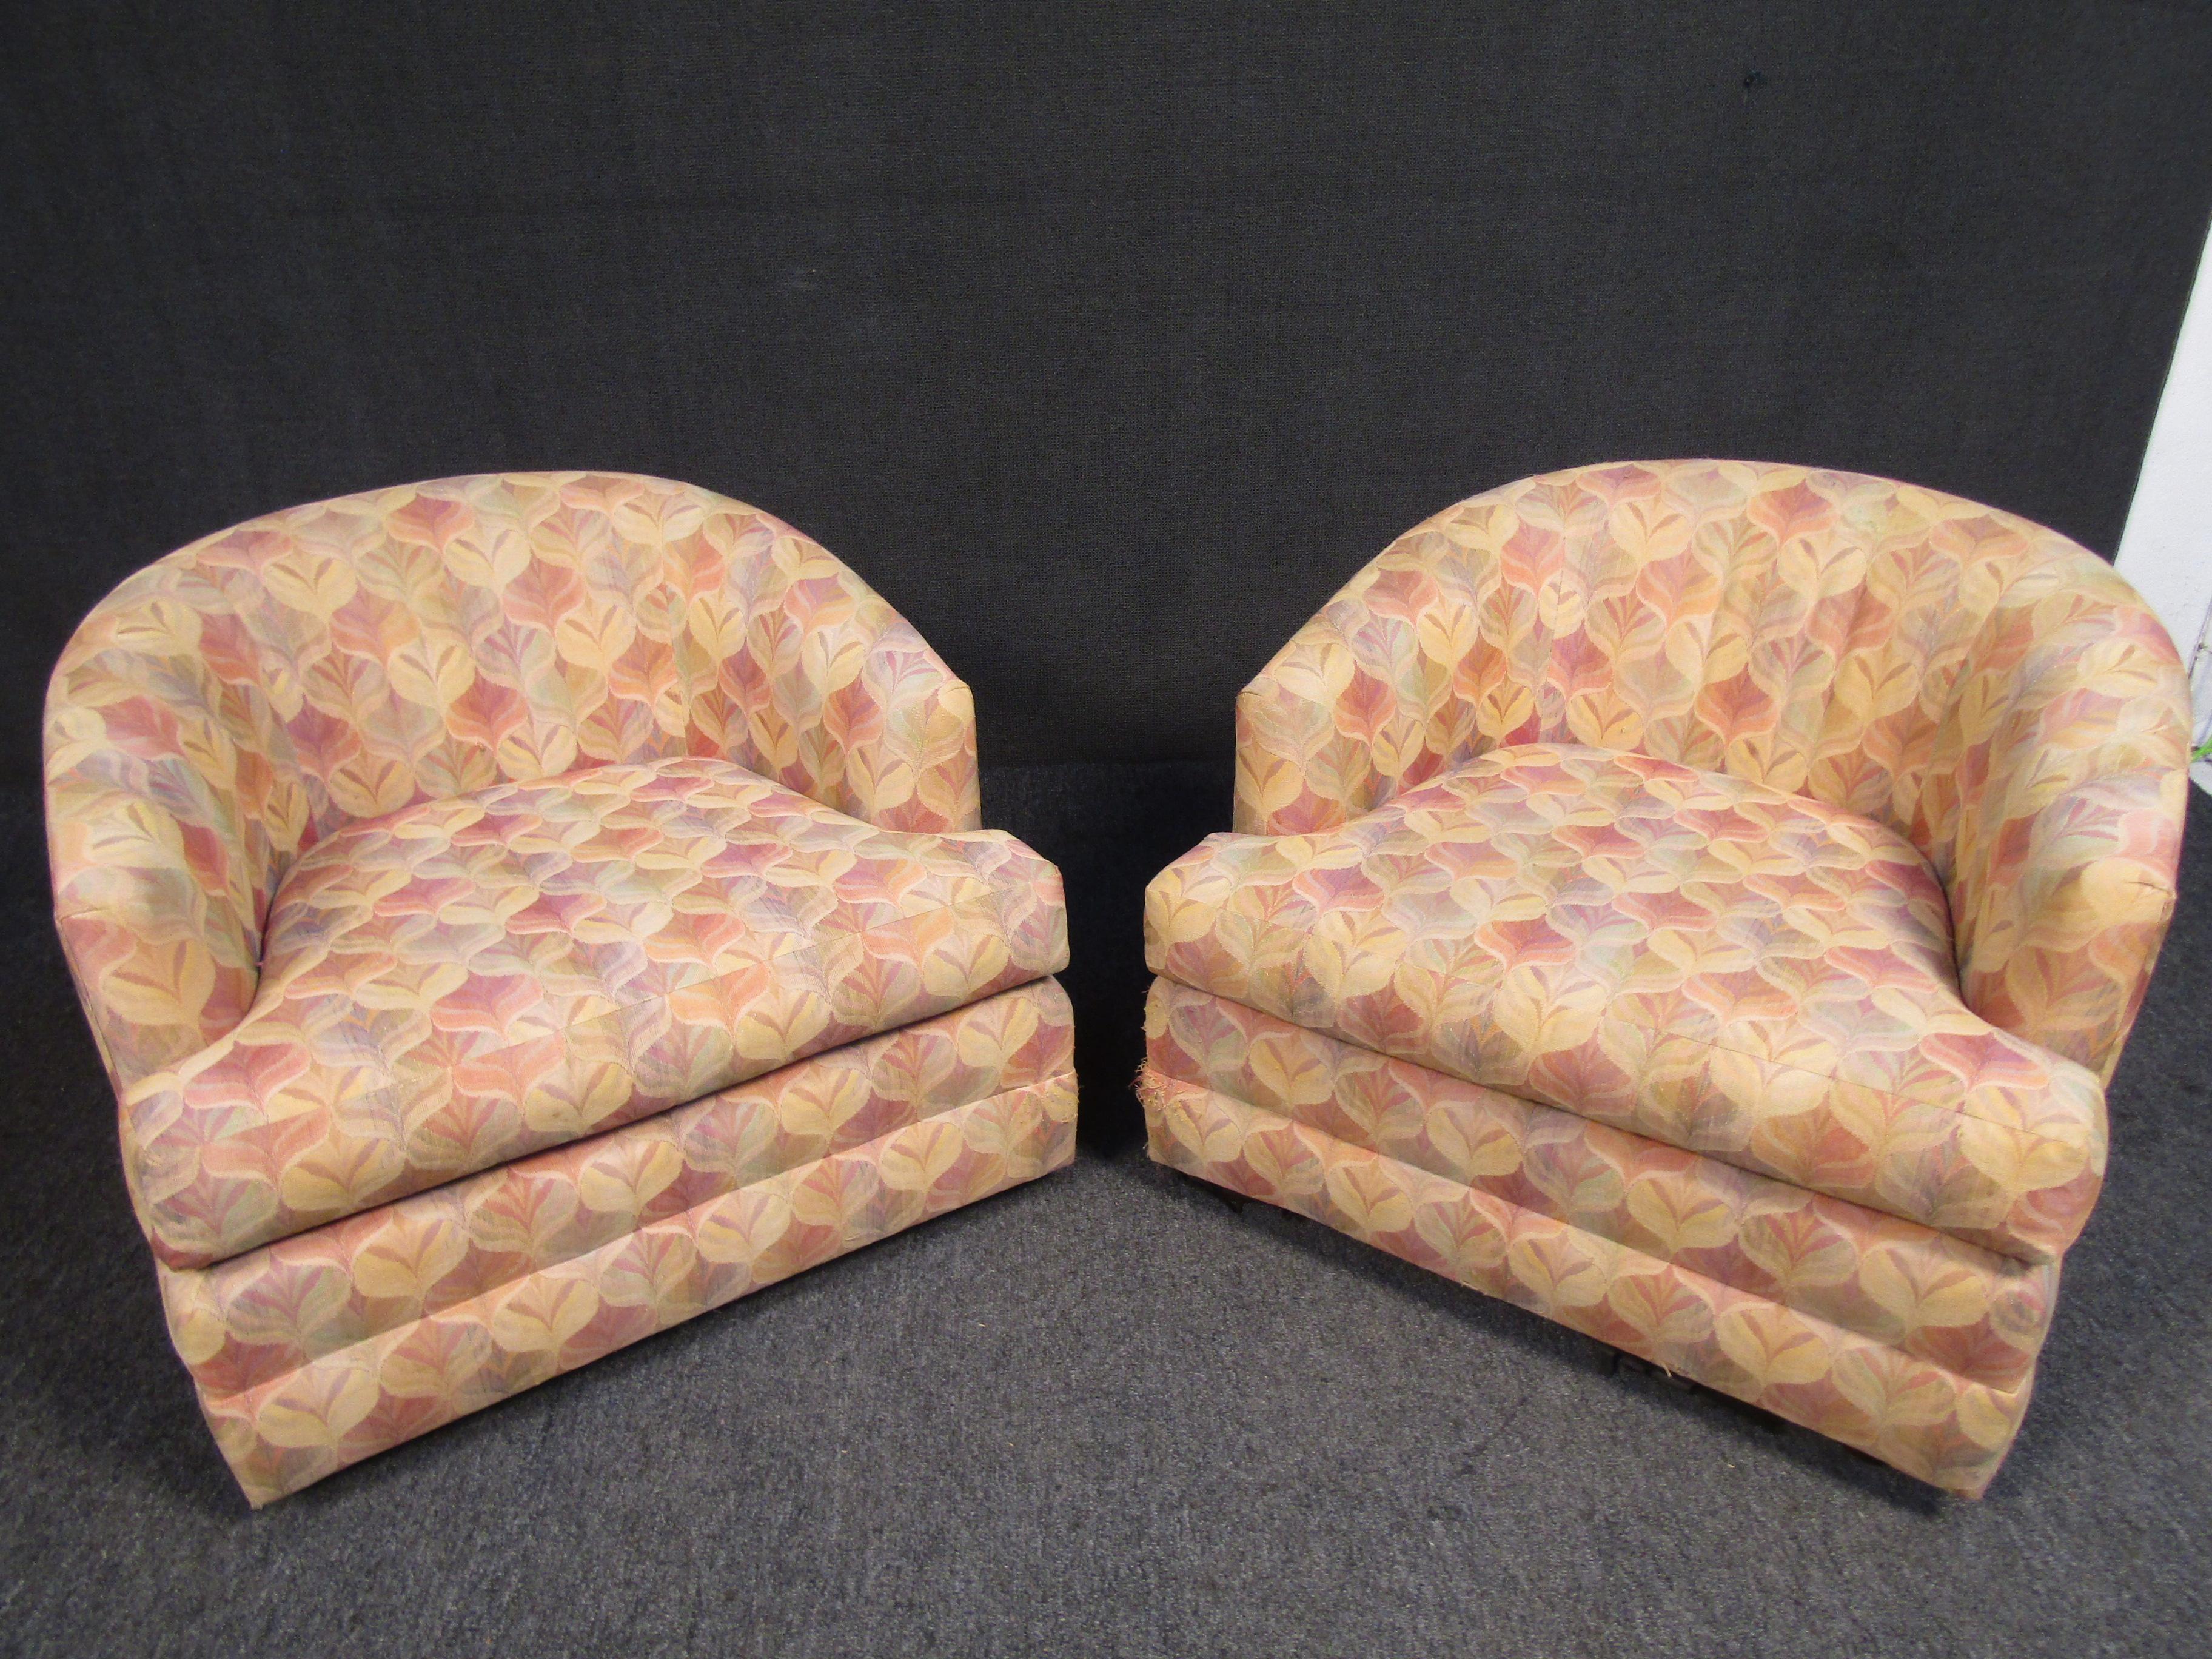 Diese Mid-Century Modern Barrel Back Chairs sind mit einem einzigartigen Muster gepolstert und stehen auf drehbaren Füßen, was sie zu einem Schlüsselstück jedes Wohnzimmers macht.

Bitte bestätigen Sie den Standort des Artikels mit dem Verkäufer